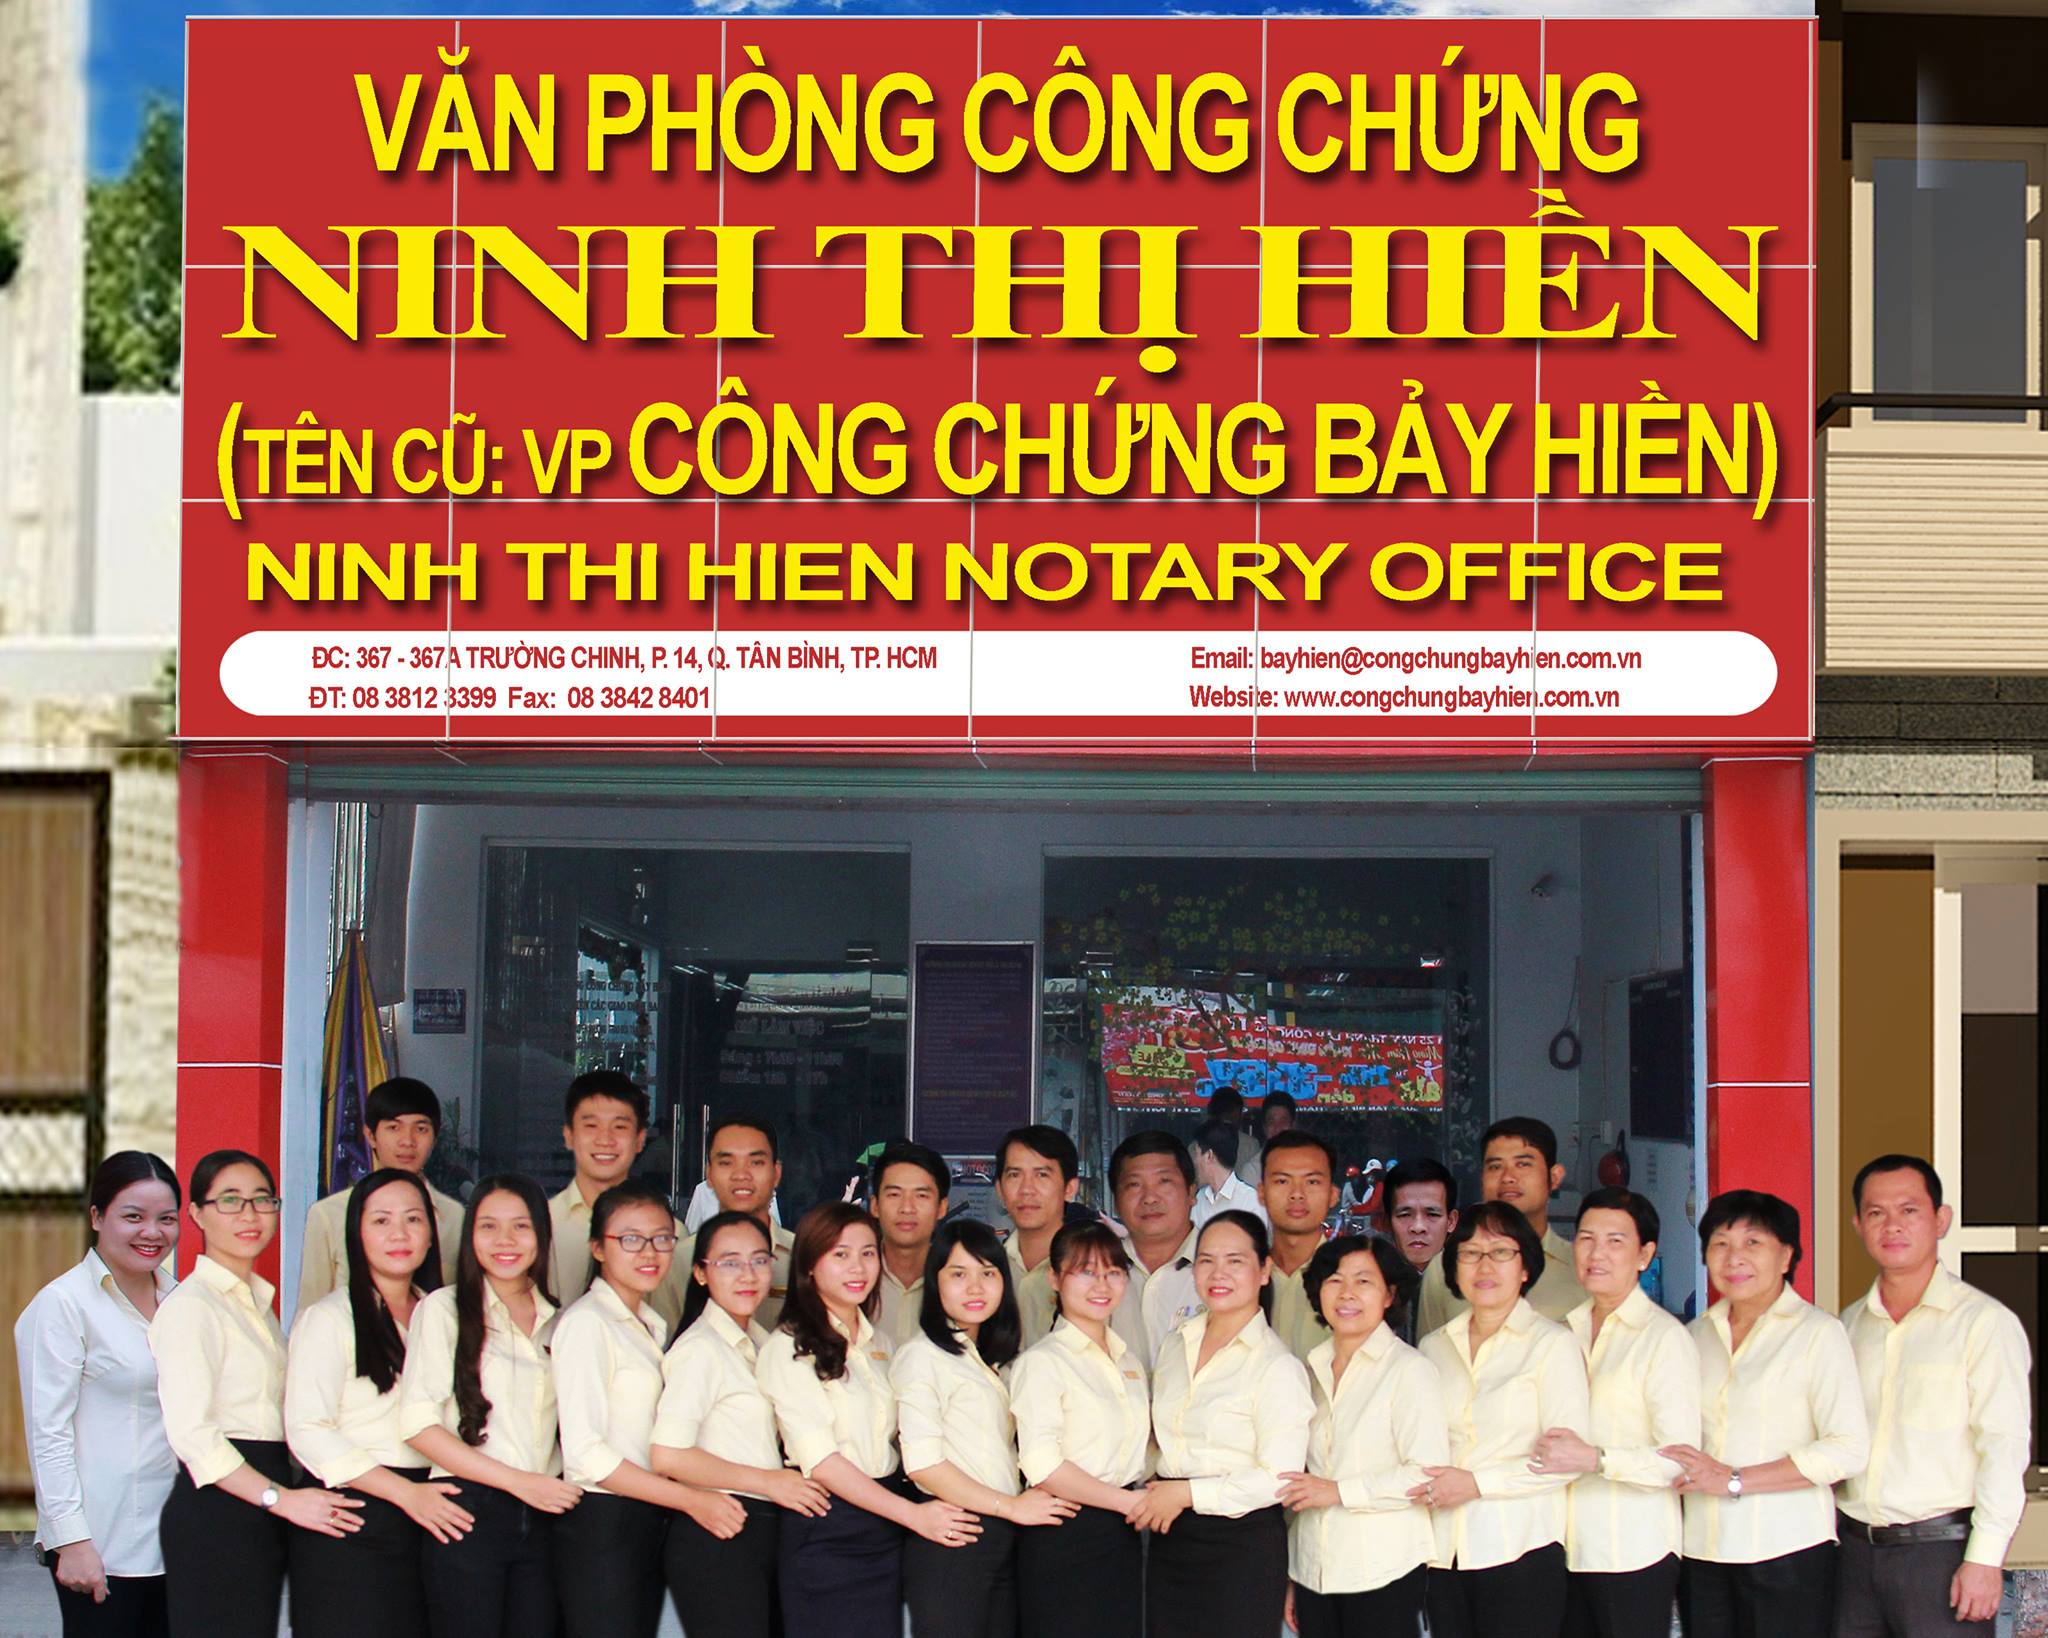 Văn phòng công chứng Ninh Thị Hiền - 367 – 367A đường Trường Chinh, Tp.HCM